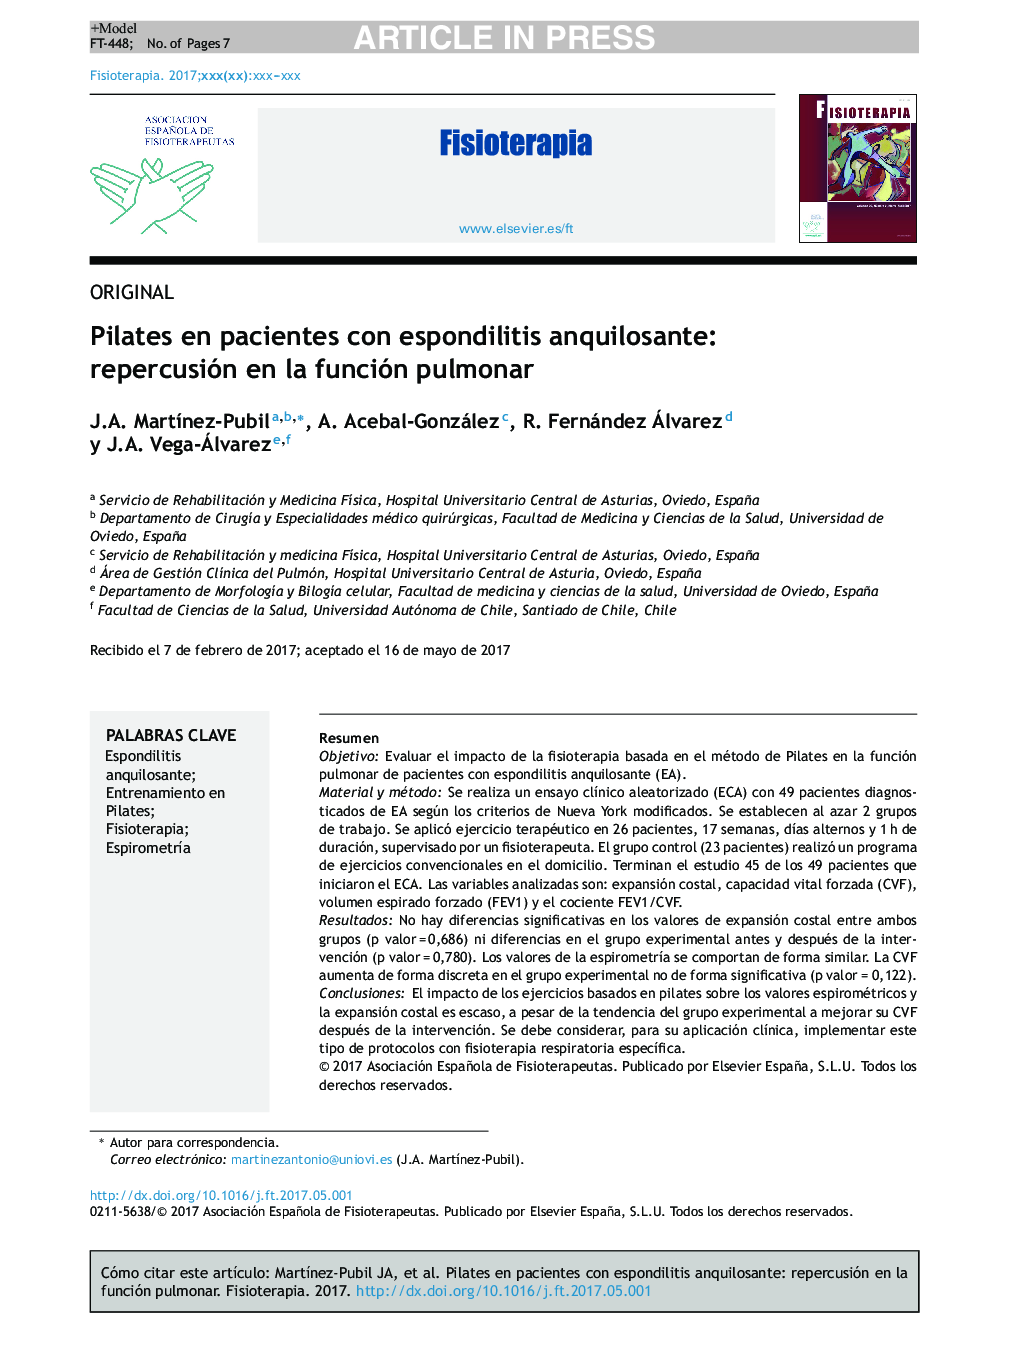 پیلاتس در بیماران مبتلا به اسپوندیلیت انکولیوز: تأثیر در عملکرد ریوی 